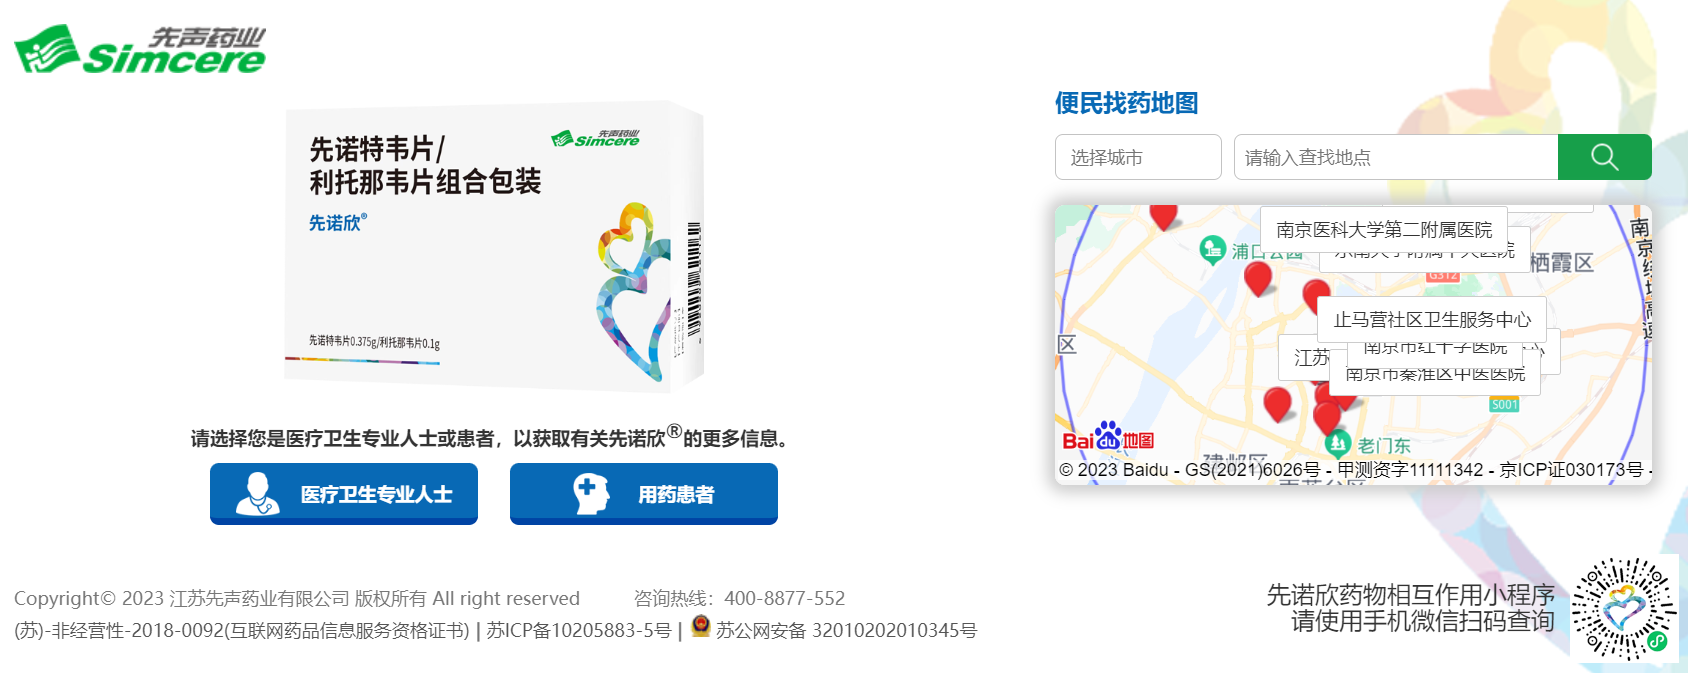 首个国产3CL新冠药先诺欣®已覆盖超2000家医疗机构  一文汇总全国各省“找药地图”